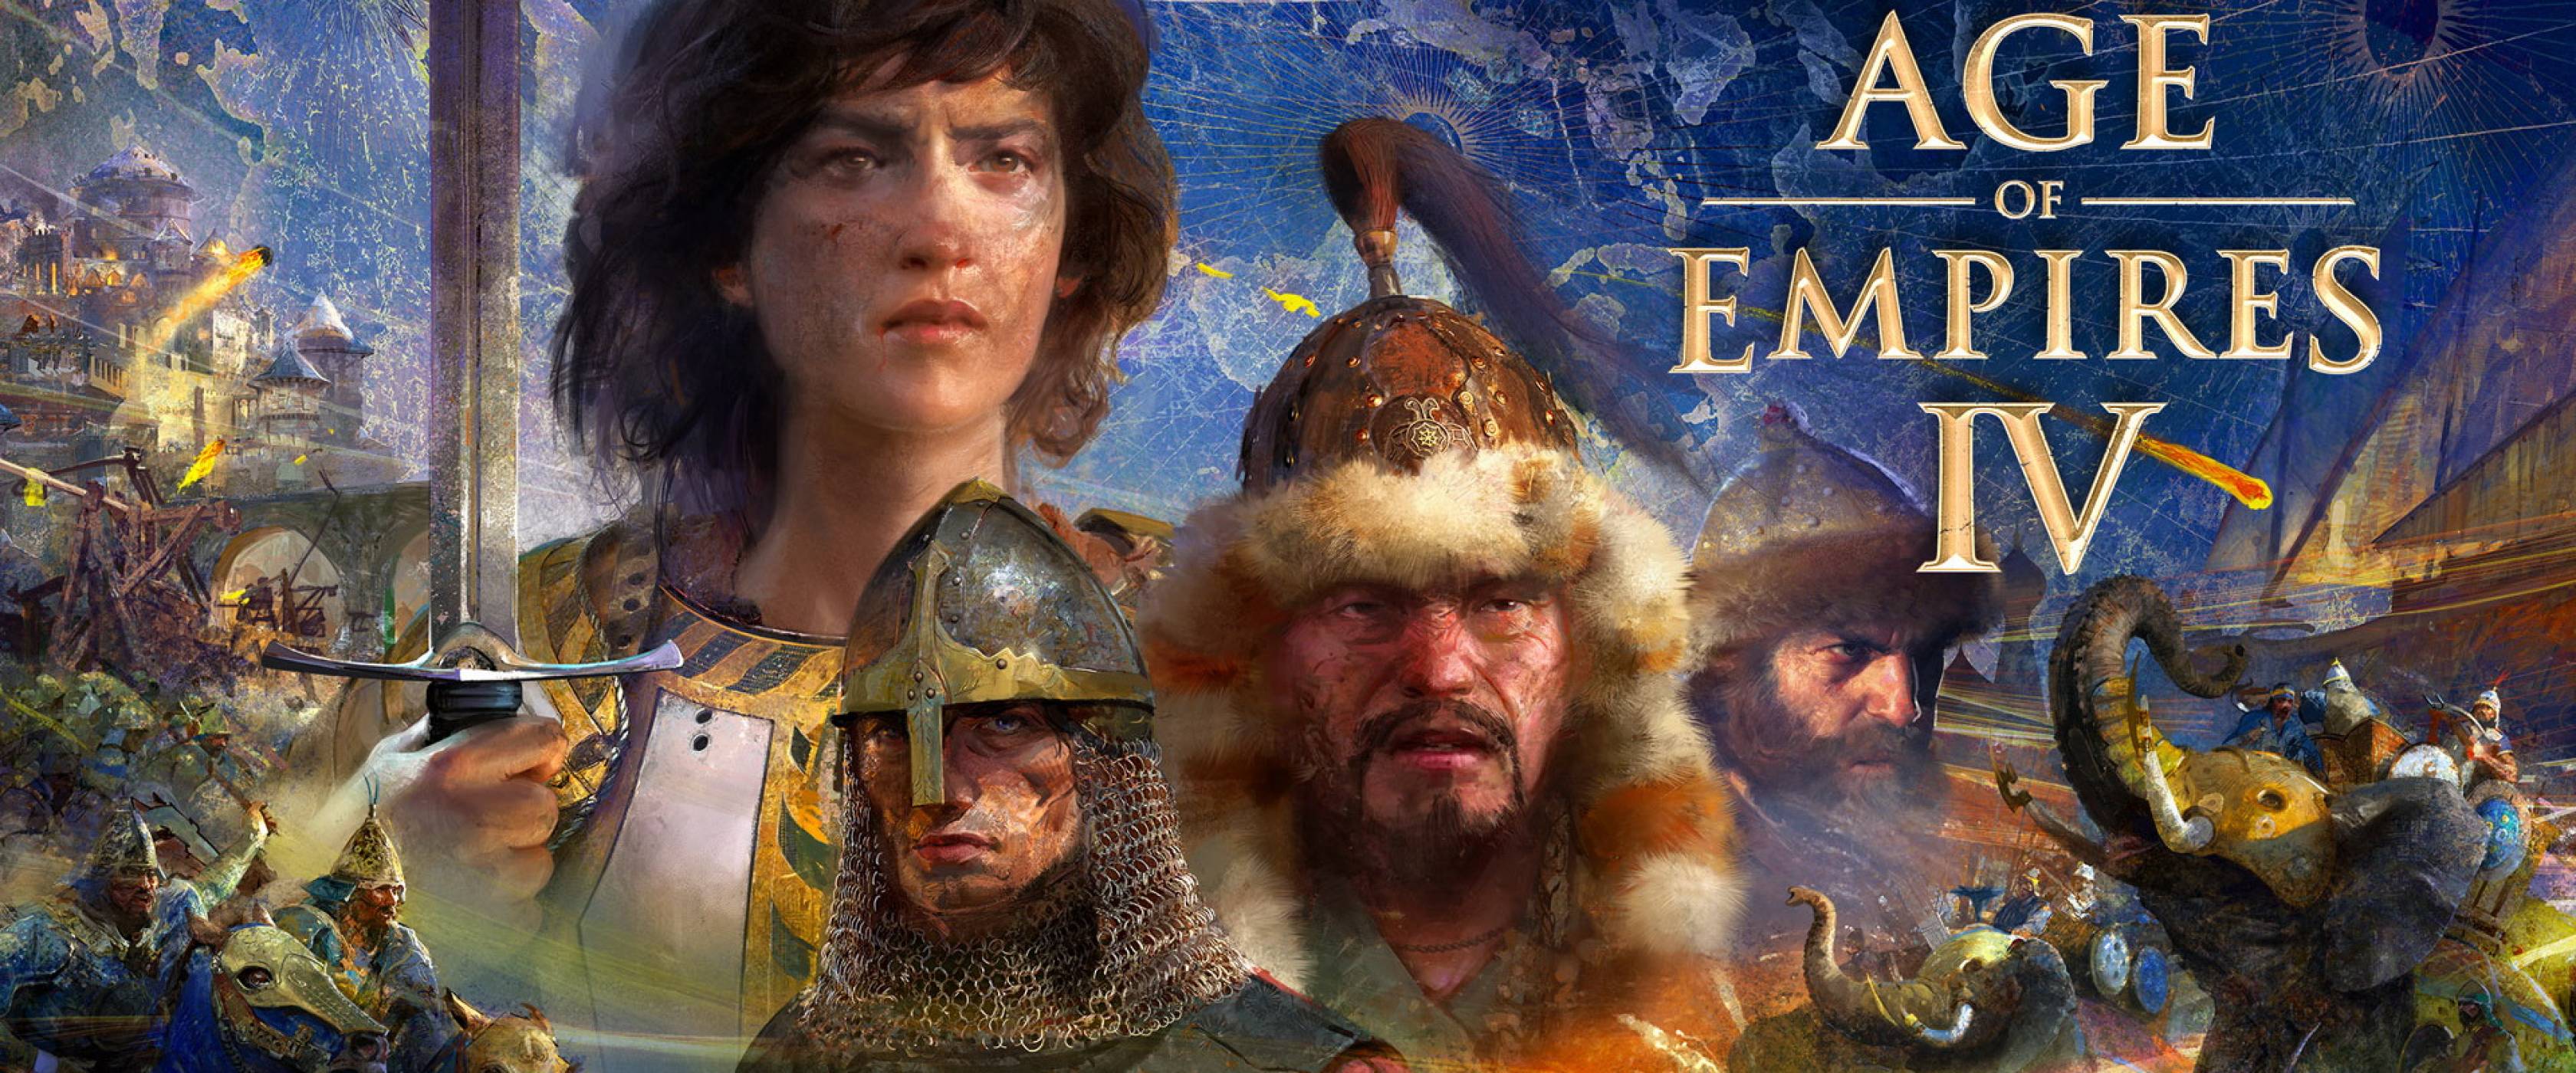 Age of Empires IV като силен аргумент за ползата от видеоигрите